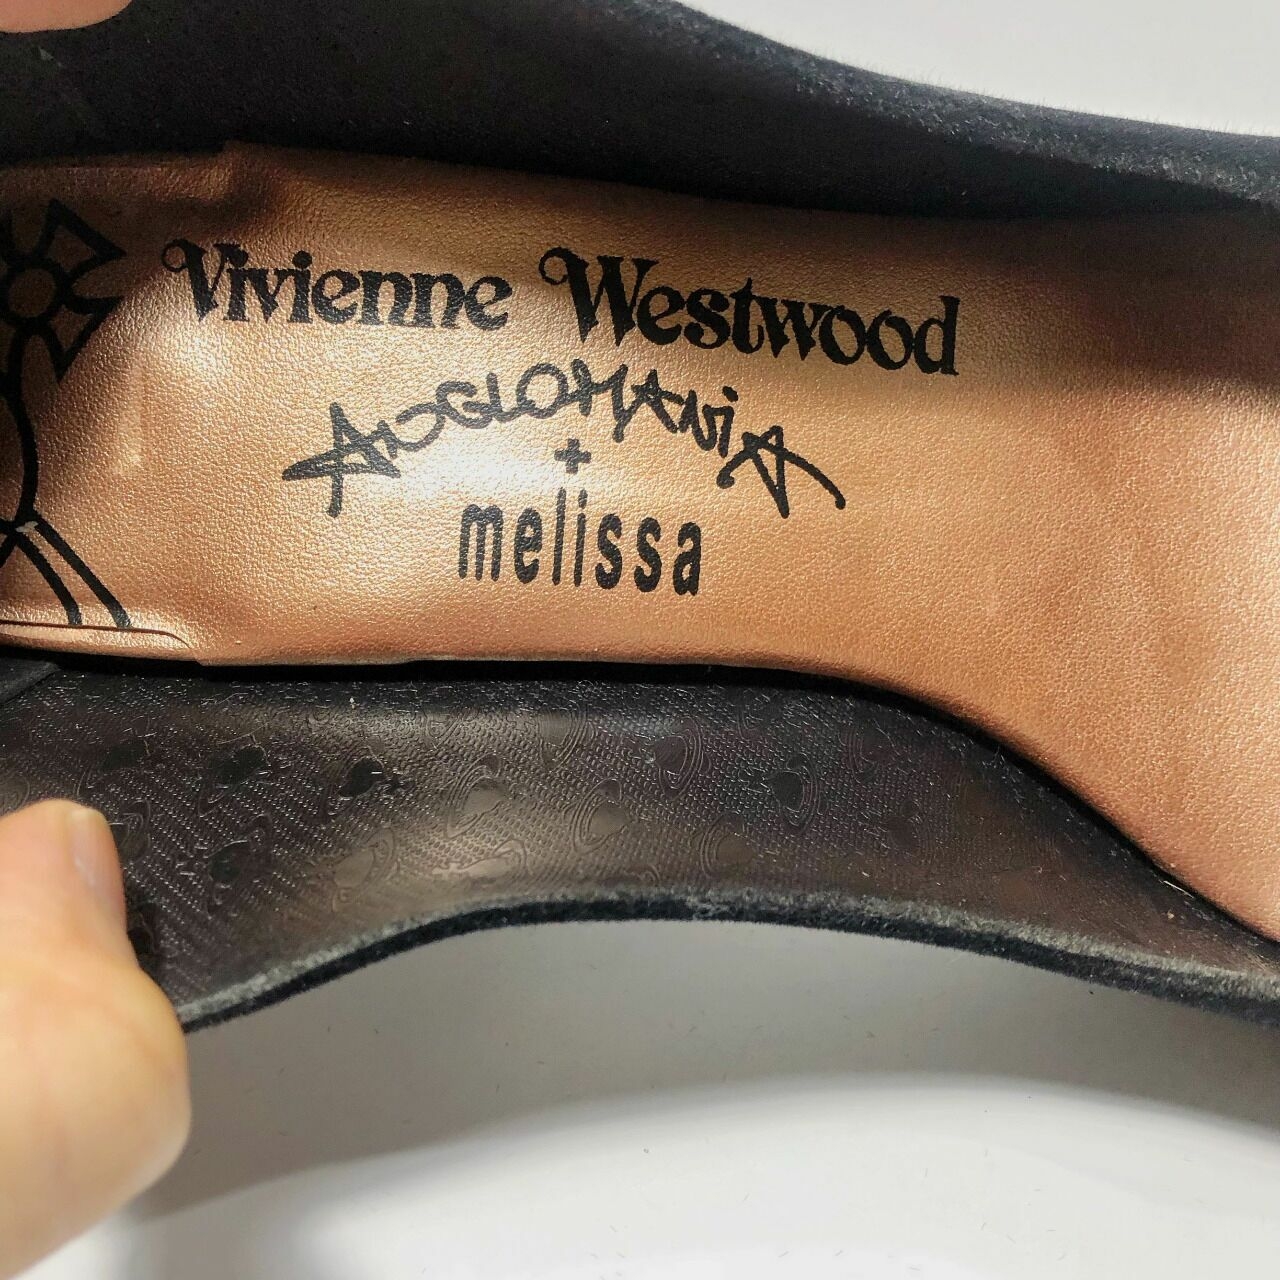 Vivienne Westwood Black Plaid Heels